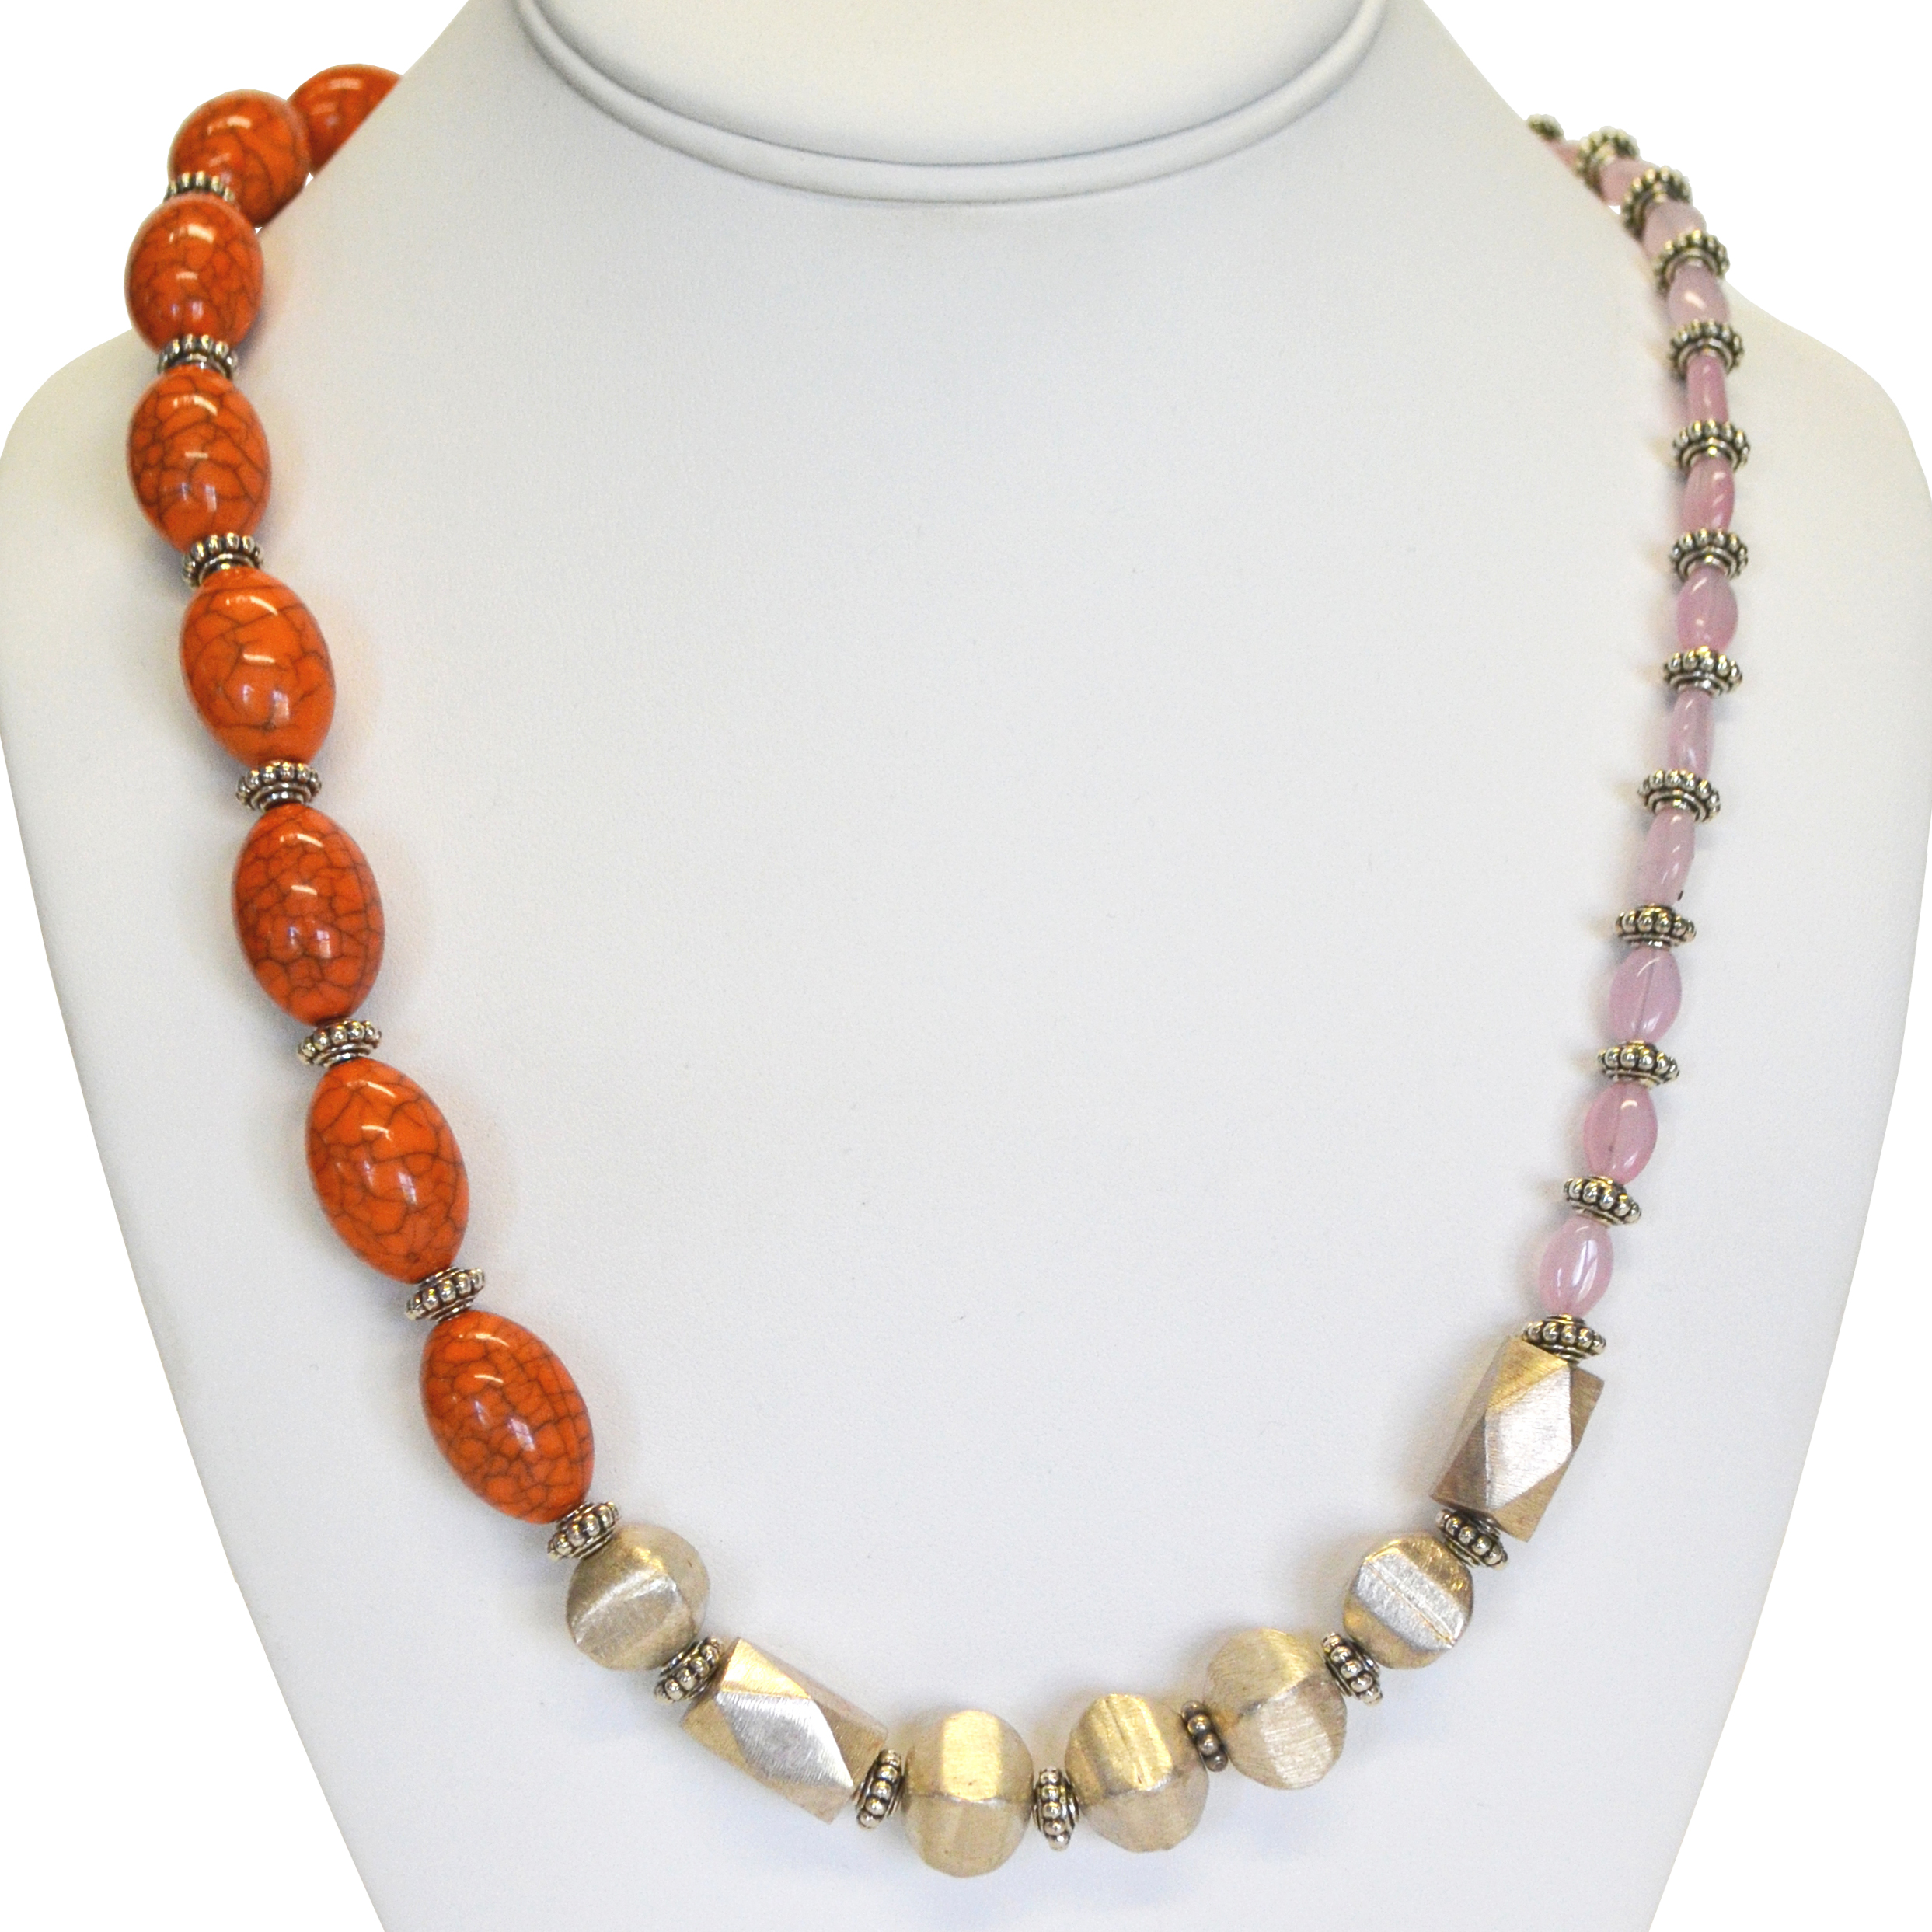 Orange asymmetrical necklace by Kayla Johnson